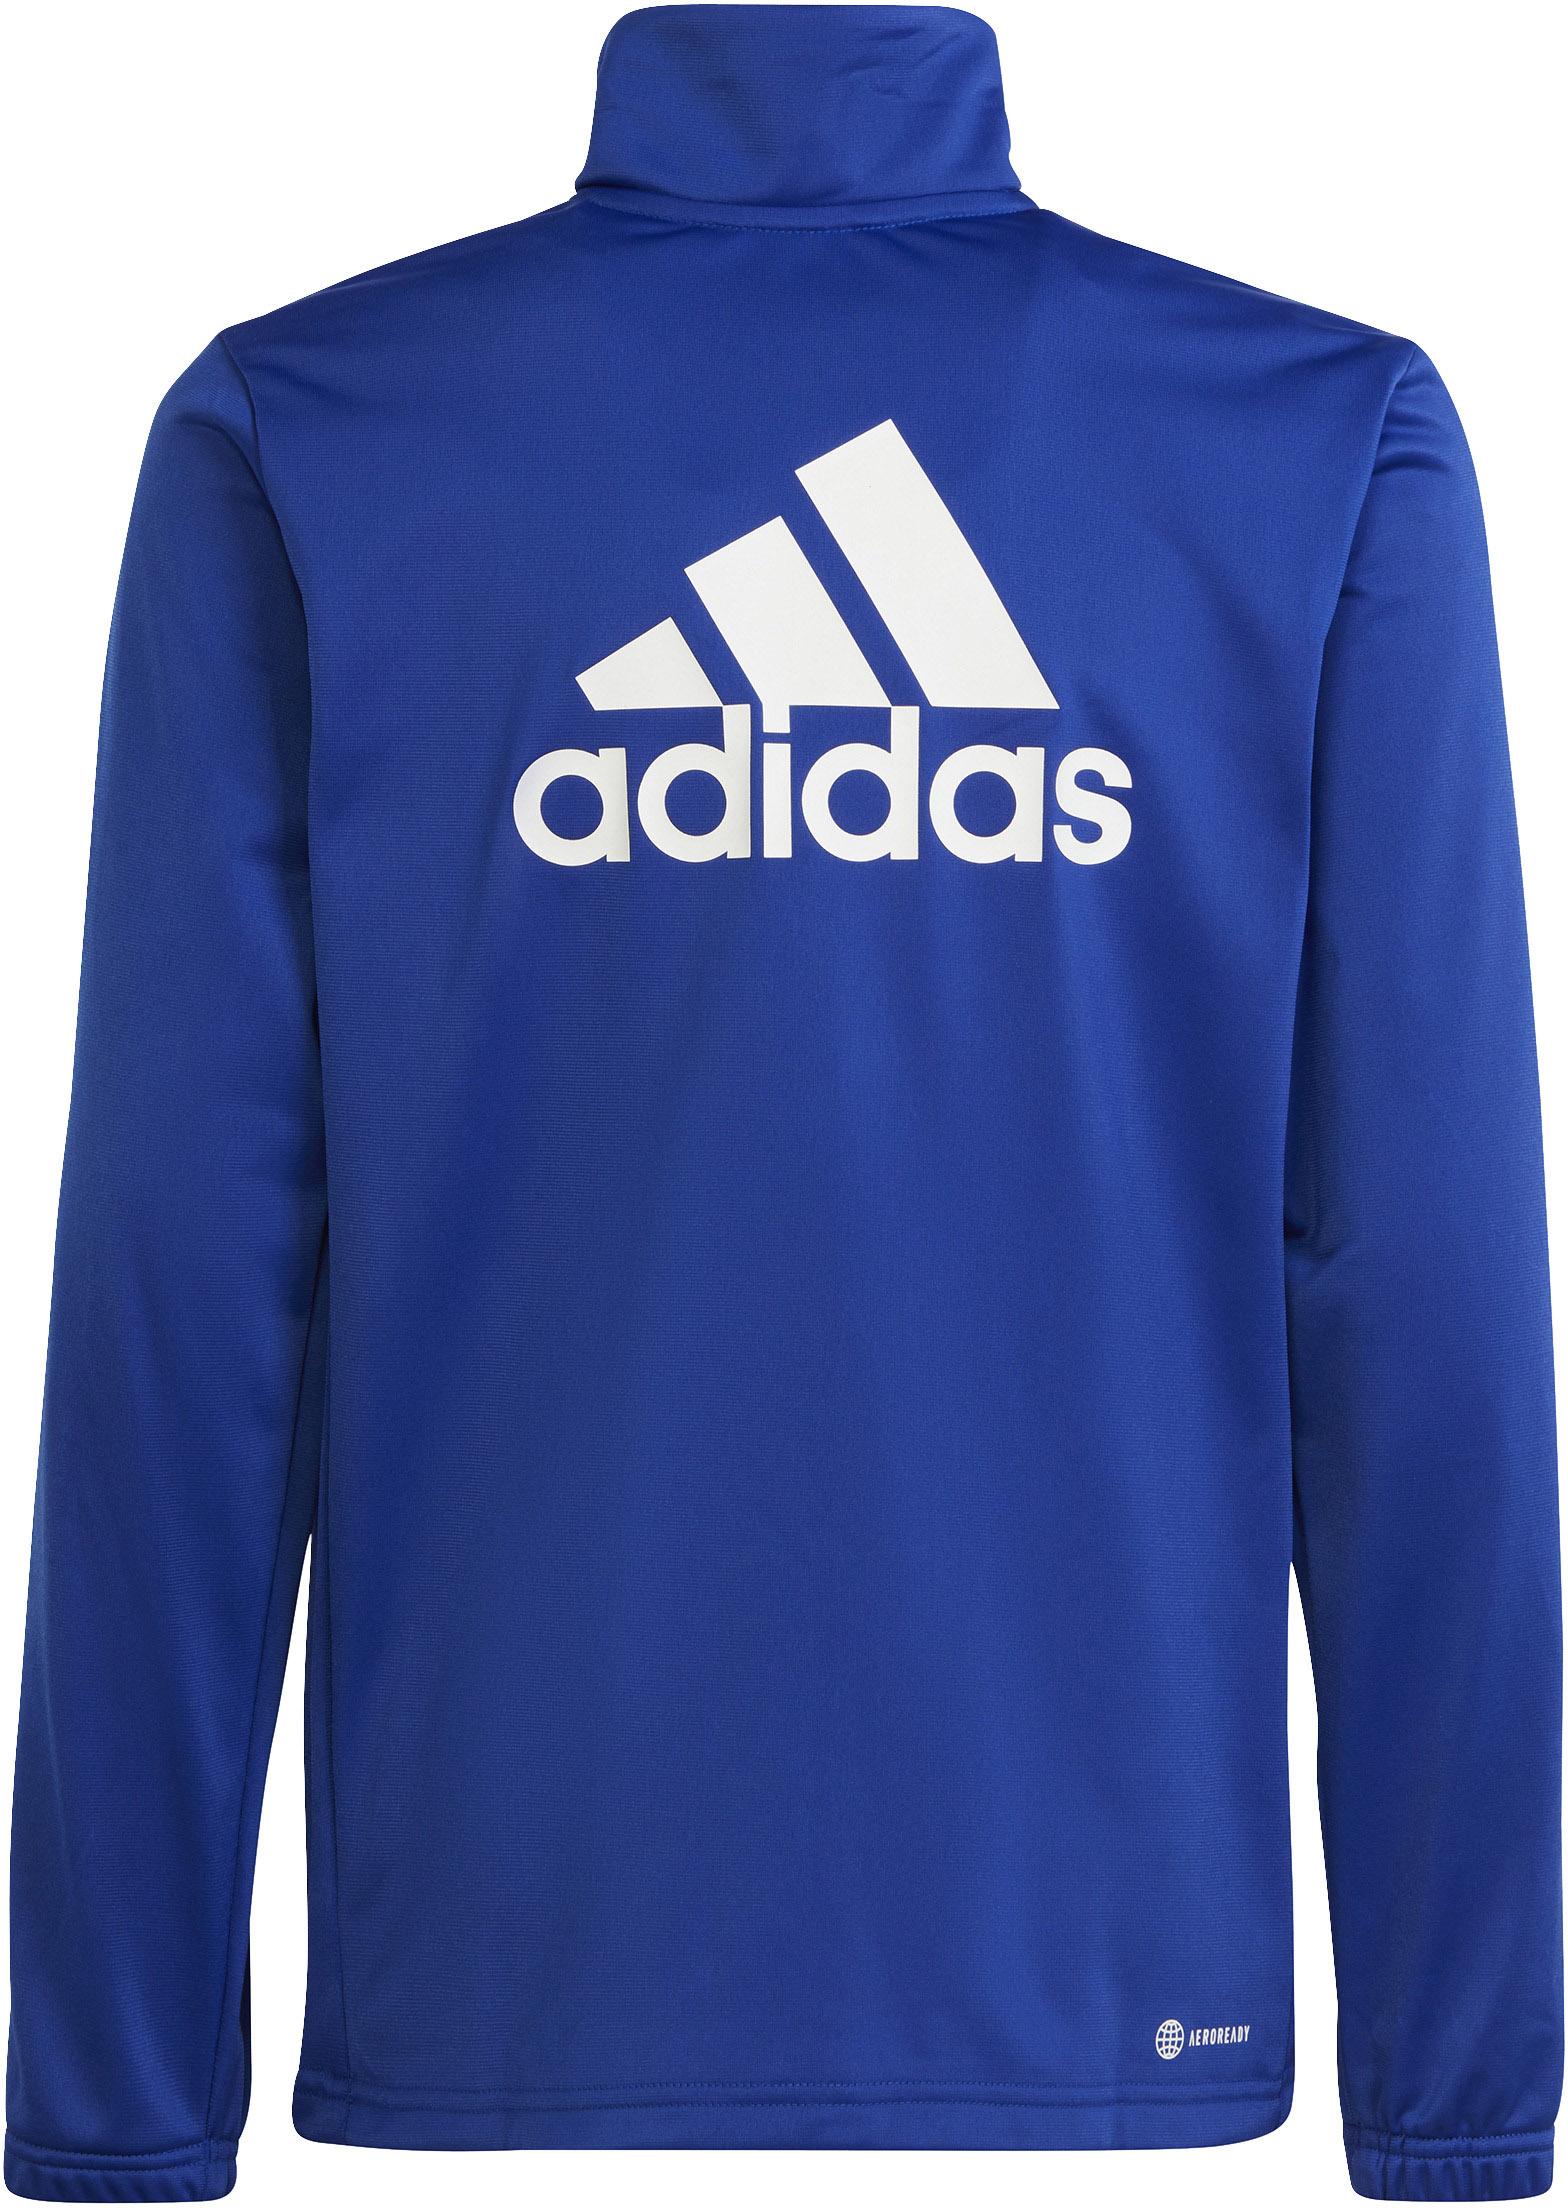 Shop Jungen Trainingsanzug Online im lucid SportScheck kaufen blue-white-legend semi Adidas ink von